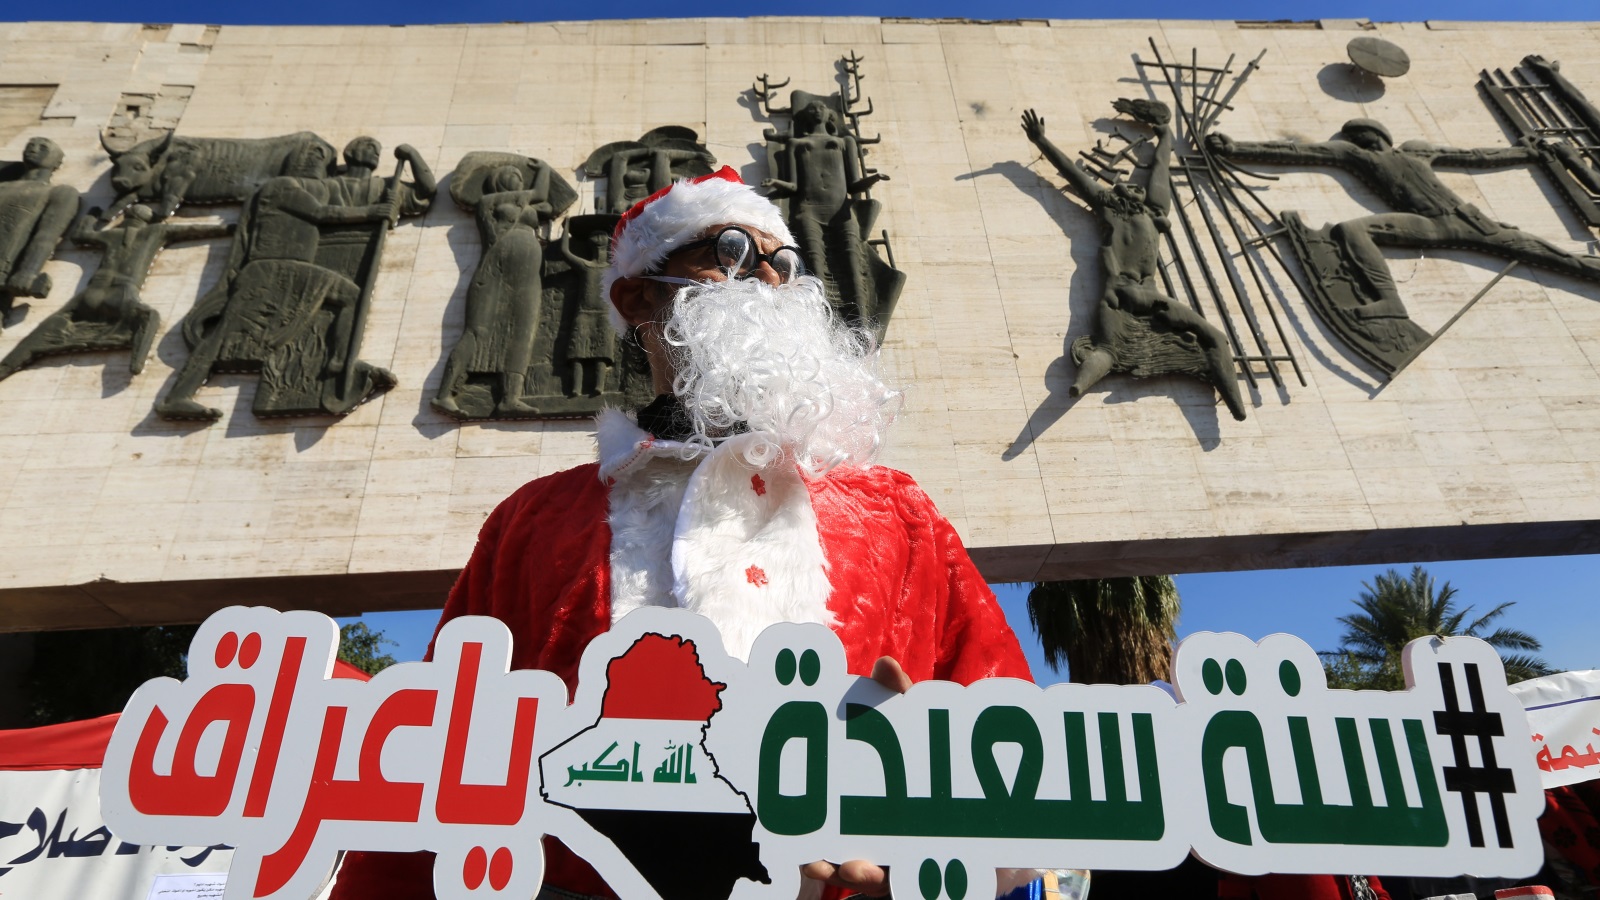 ناشط يرتدي ملابس بابا نويل ويحمل لوحة في ساحة التحرير يتمنى سنة سعيدة للعراق في 2020 (الأناضول)